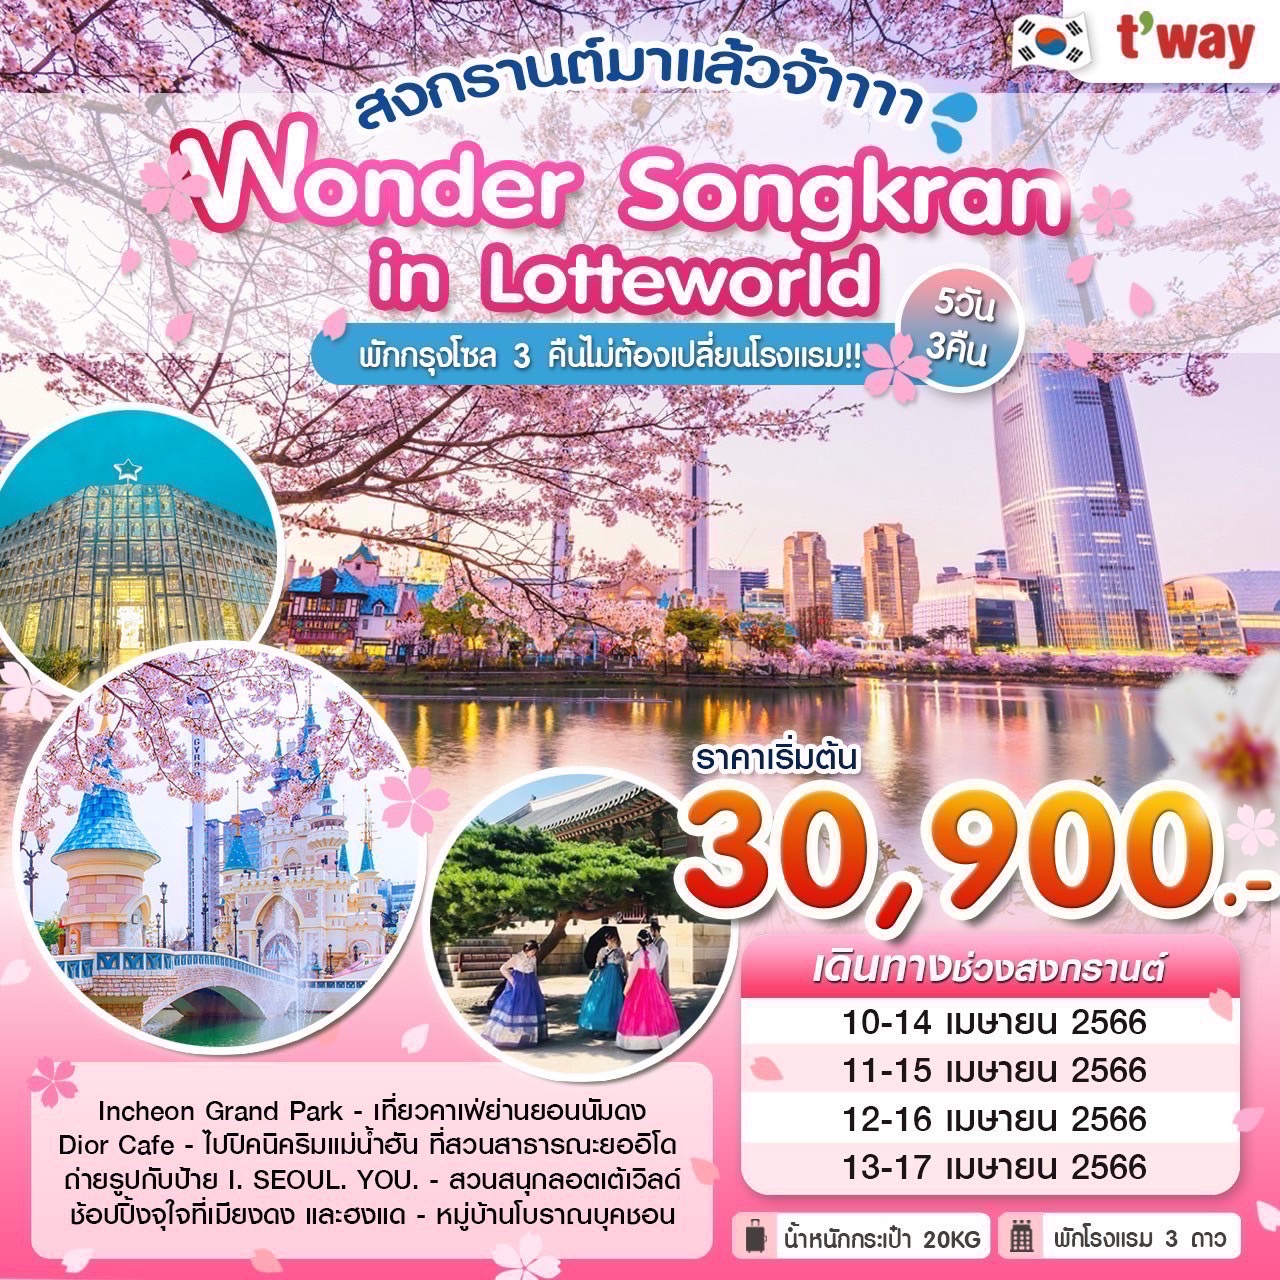 ทัวร์เกาหลีใต้ Wonder Songkran in Lotteworld 5วัน 3คืน (TW) เม.ย. 66